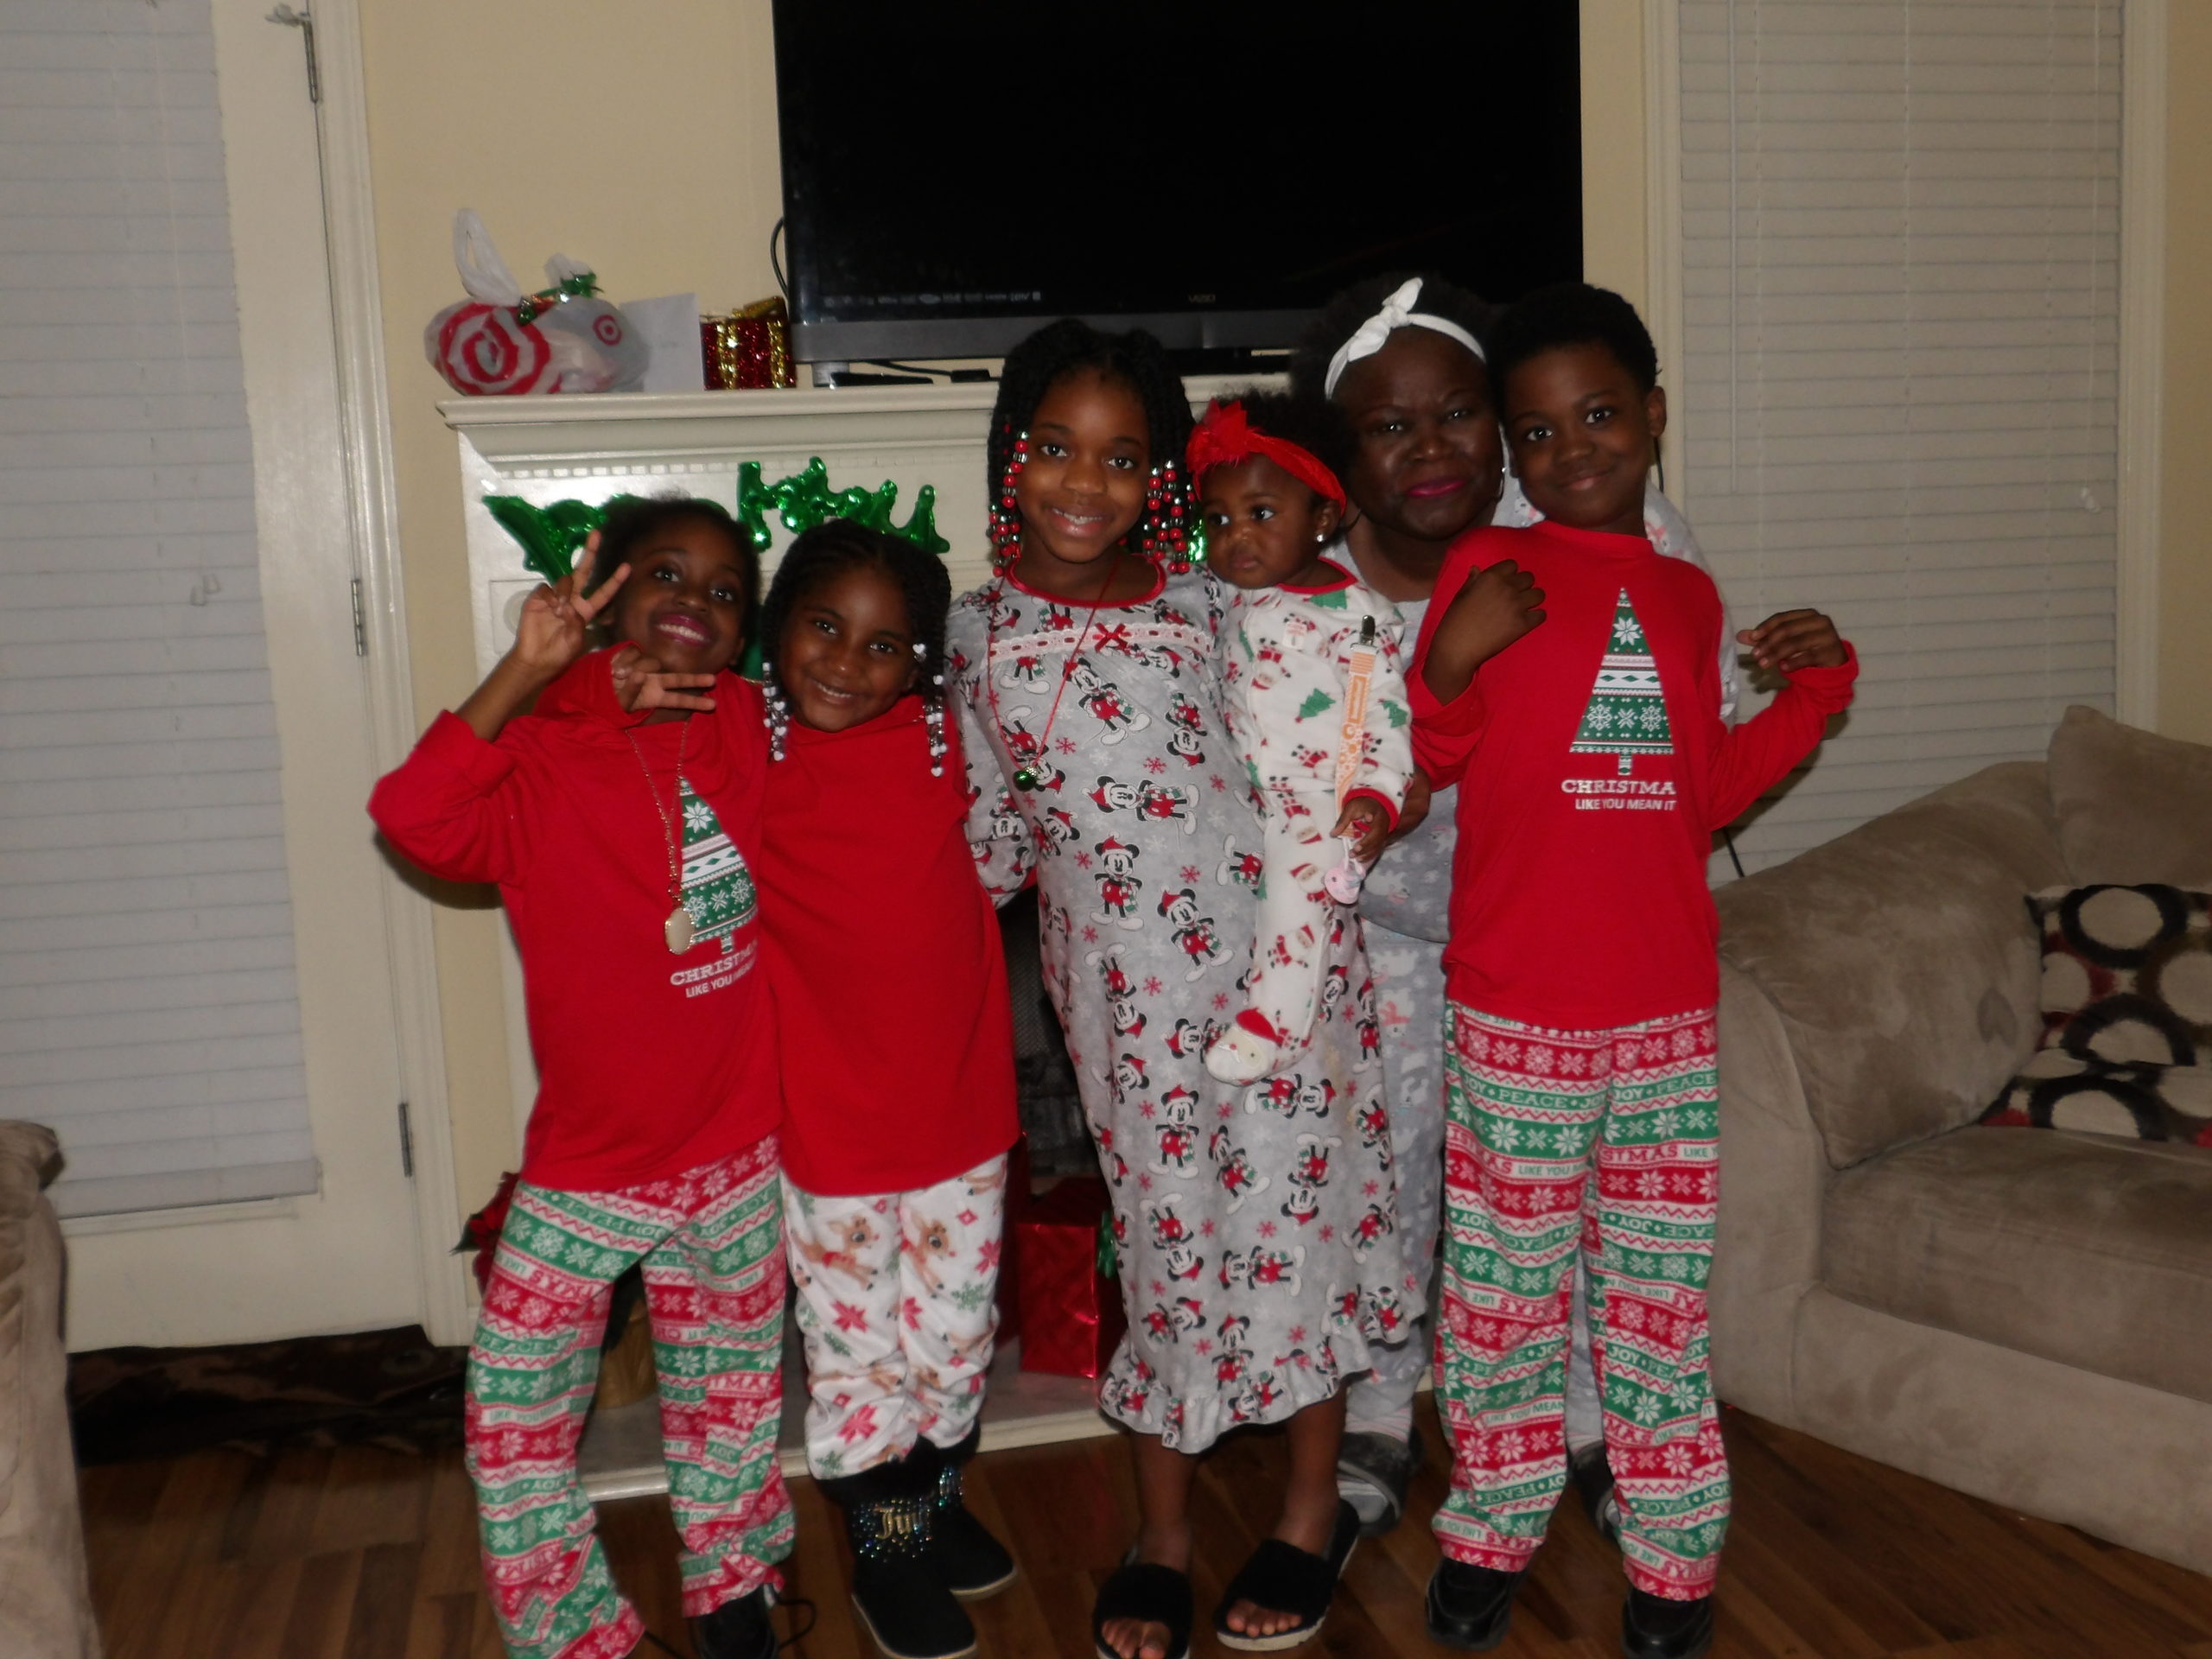 My crew for the Christmas pajamas shindig